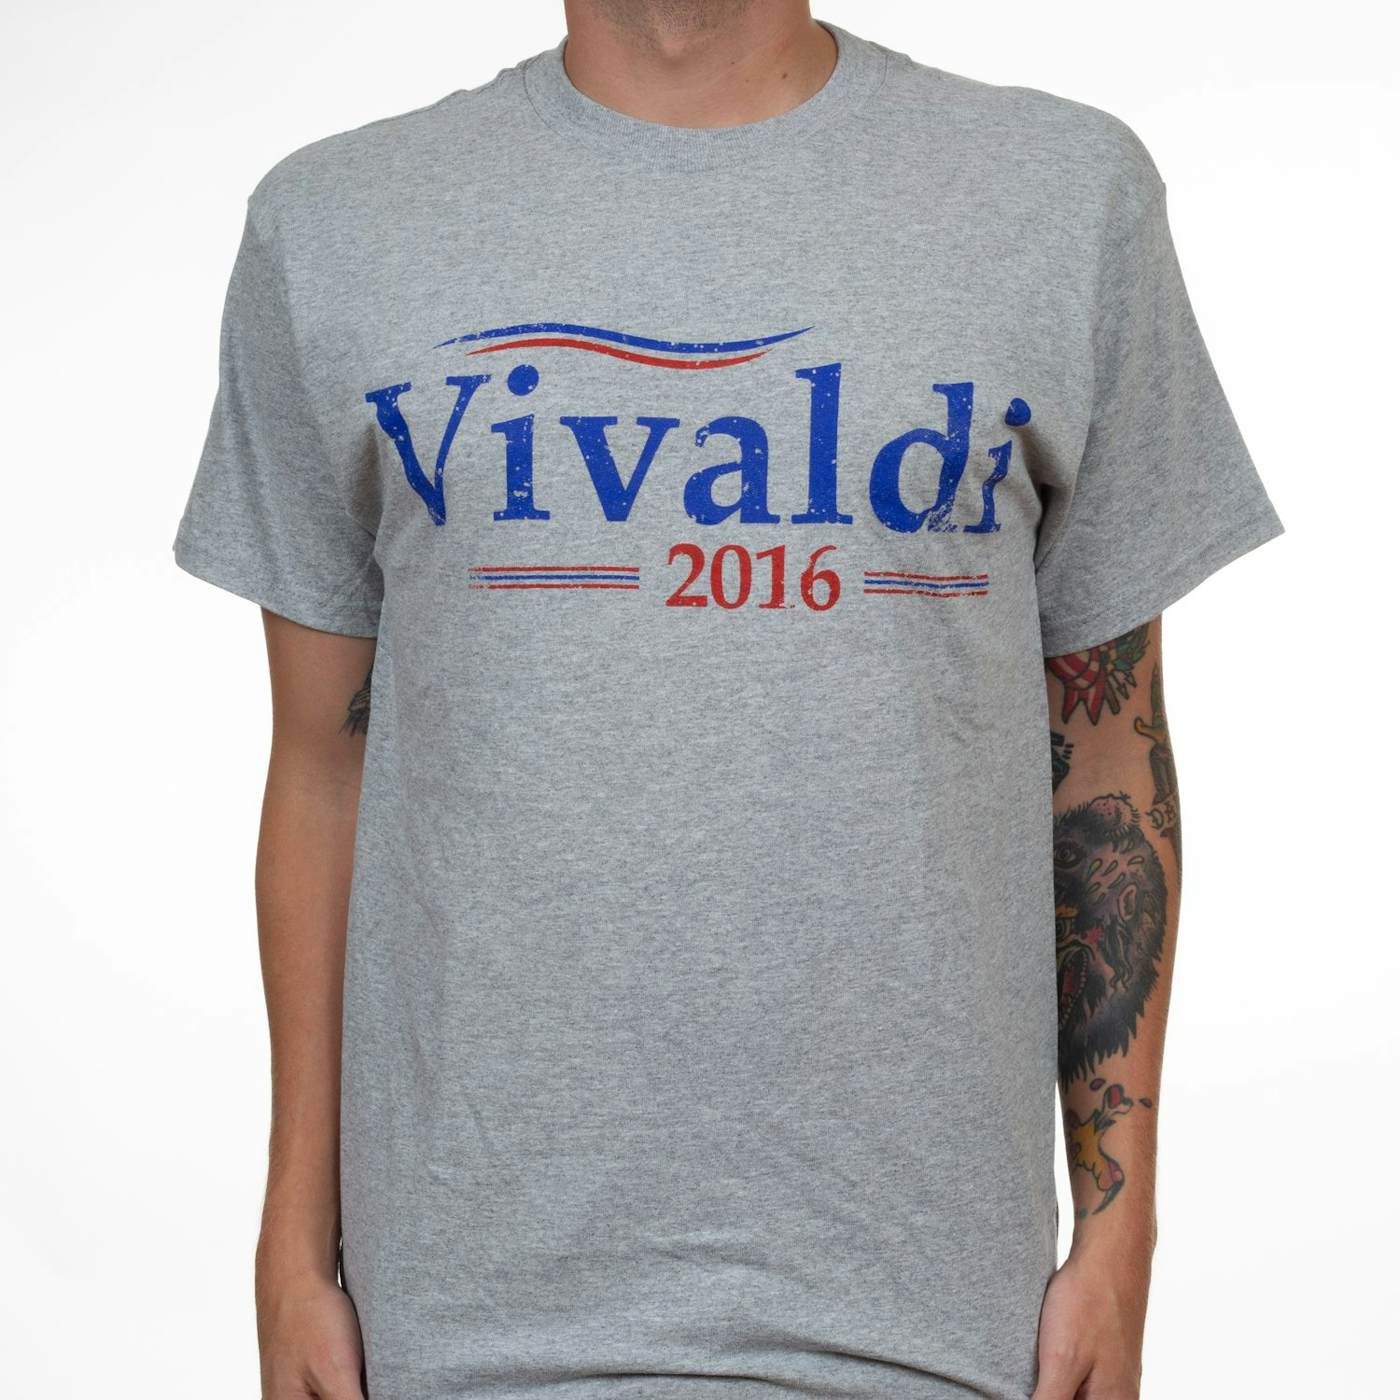 Angel Vivaldi "2016" T-Shirt